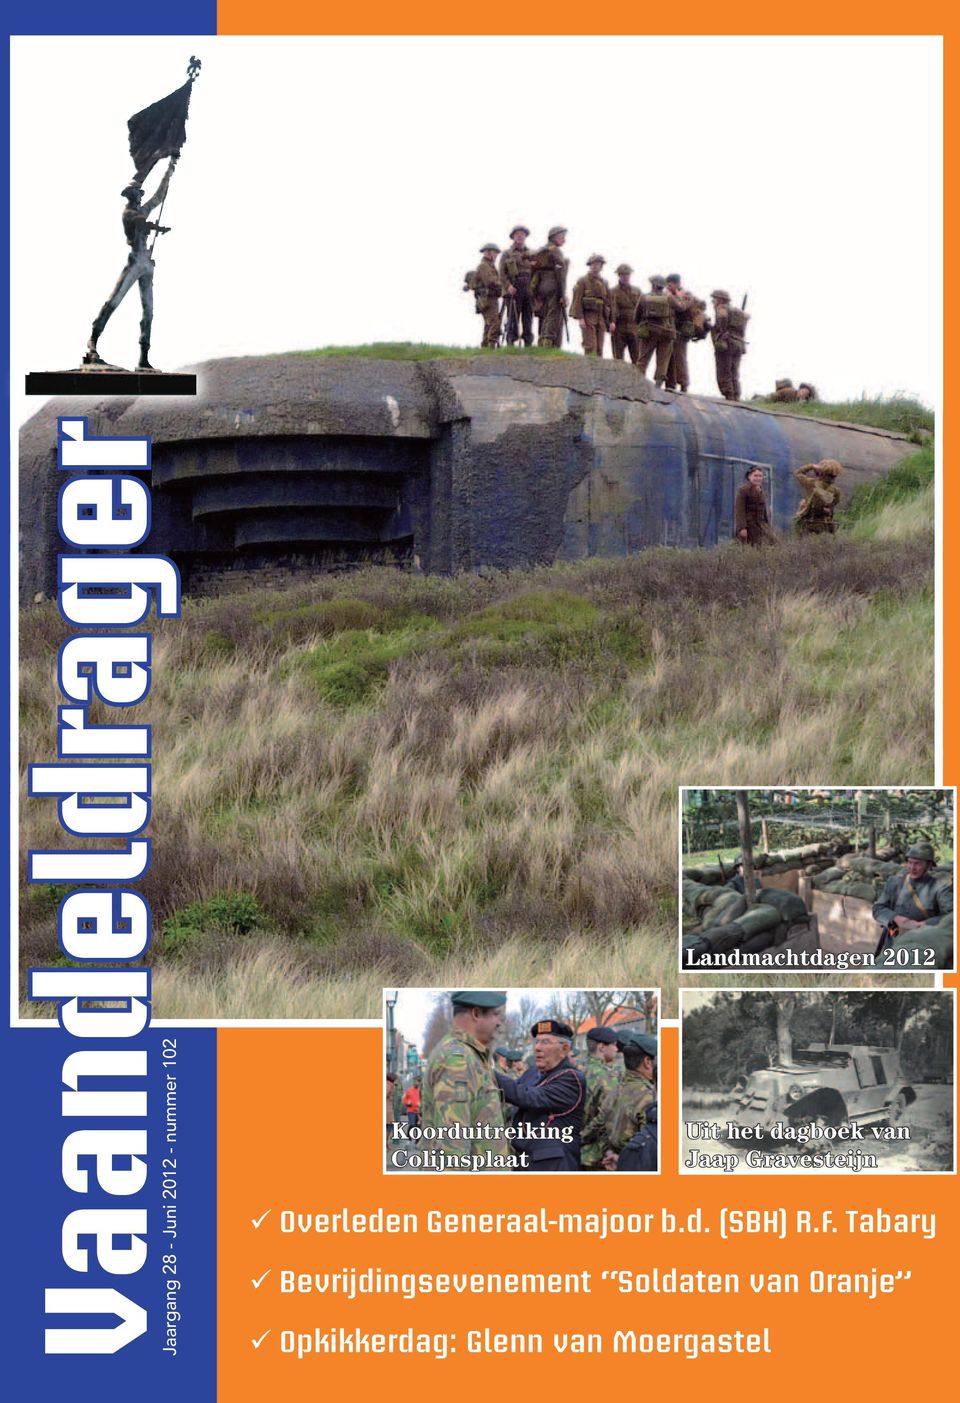 Tabary 99Bevrijdingsevenement Soldaten van Oranje 99Opkikkerdag: